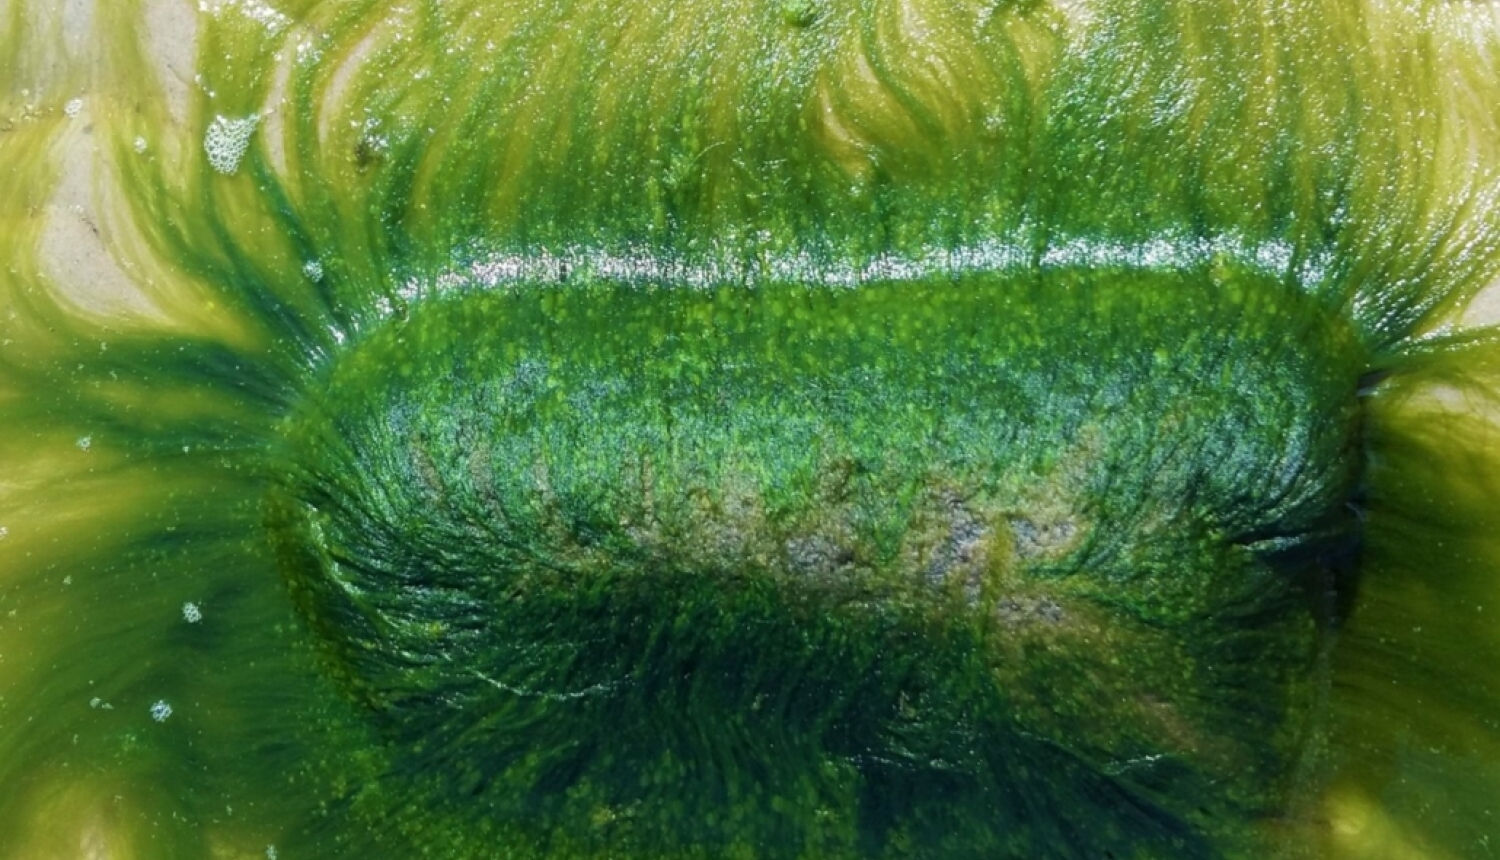 Rītdienas jūras labība – Ulva (jūras salāti): inovatīvas marikultūras modelis